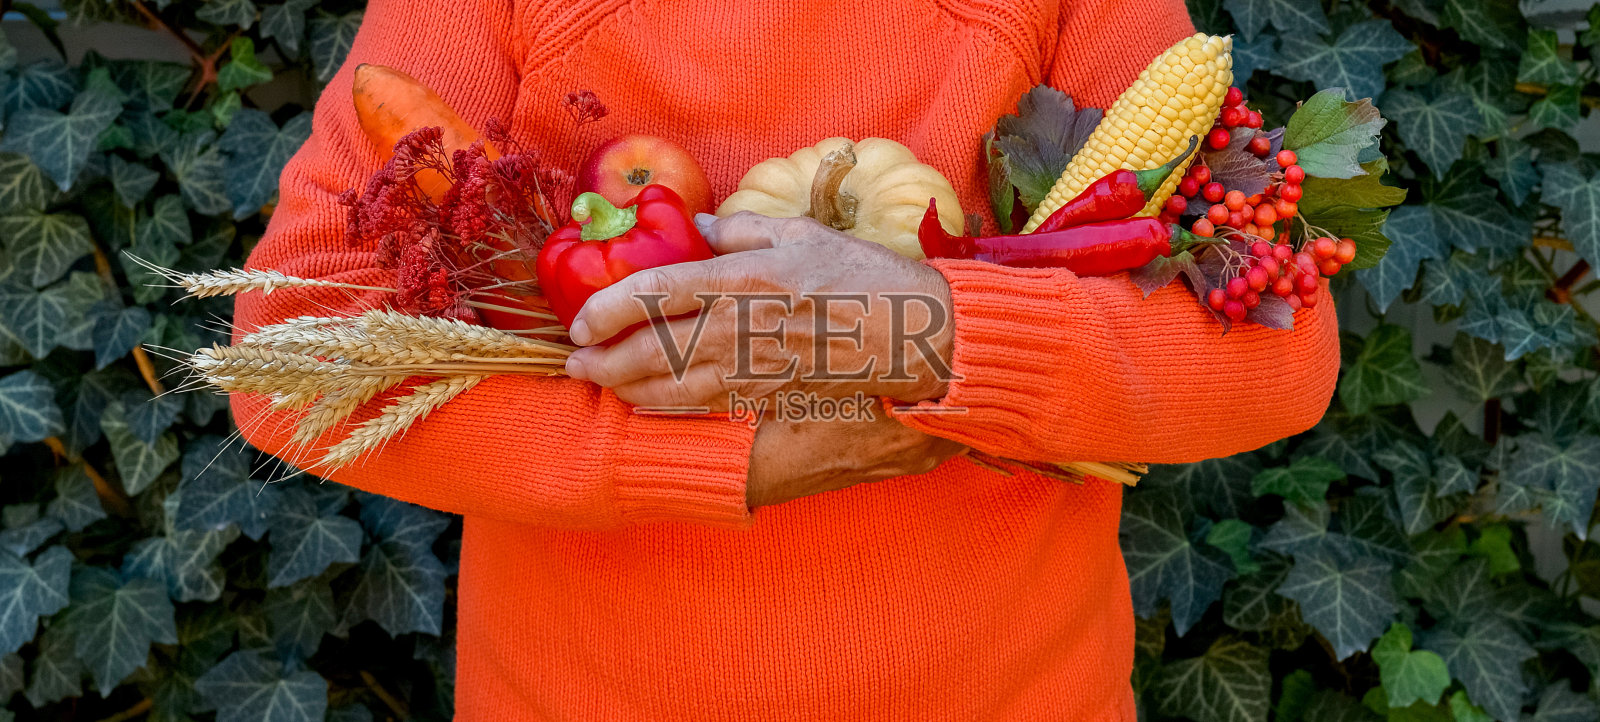 老婆婆手里拿着五颜六色的秋天蔬菜和水果照片摄影图片